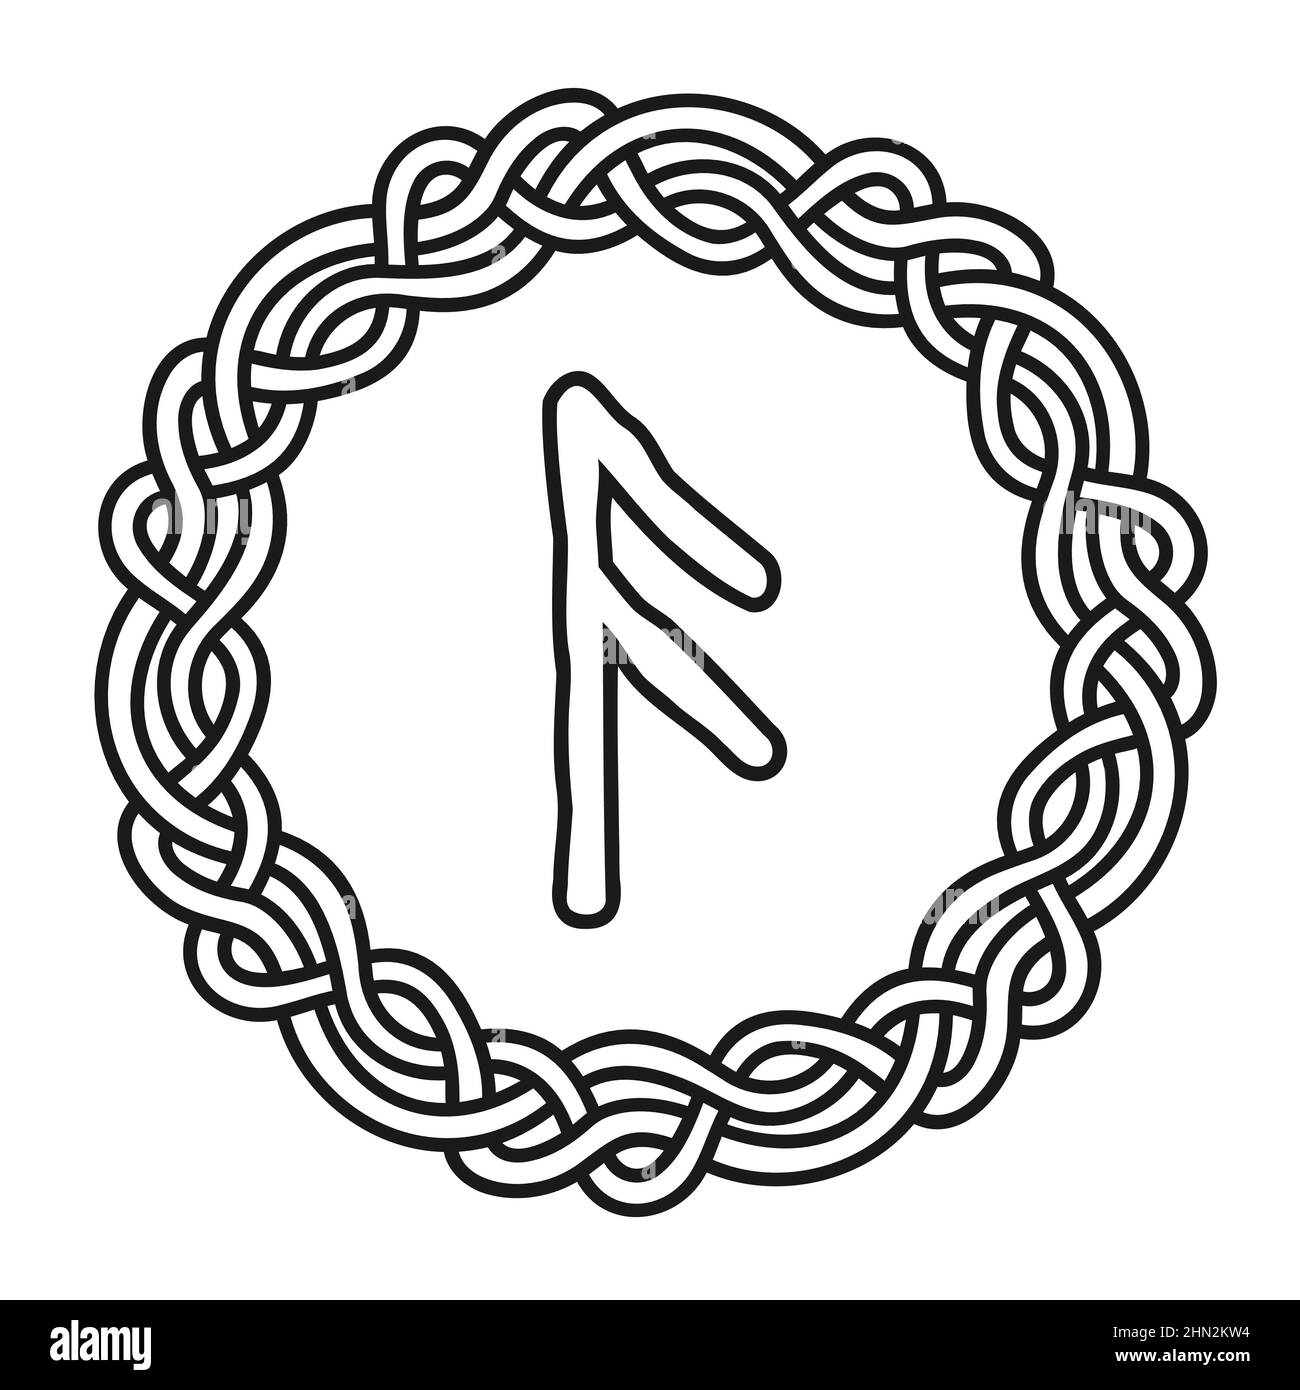 Rune Ansuz in un cerchio - un antico simbolo o segno scandinavo, amuleto.  Vichingo scrittura. Illustrazione vettoriale disegnata a mano per siti web,  giochi, p Immagine e Vettoriale - Alamy